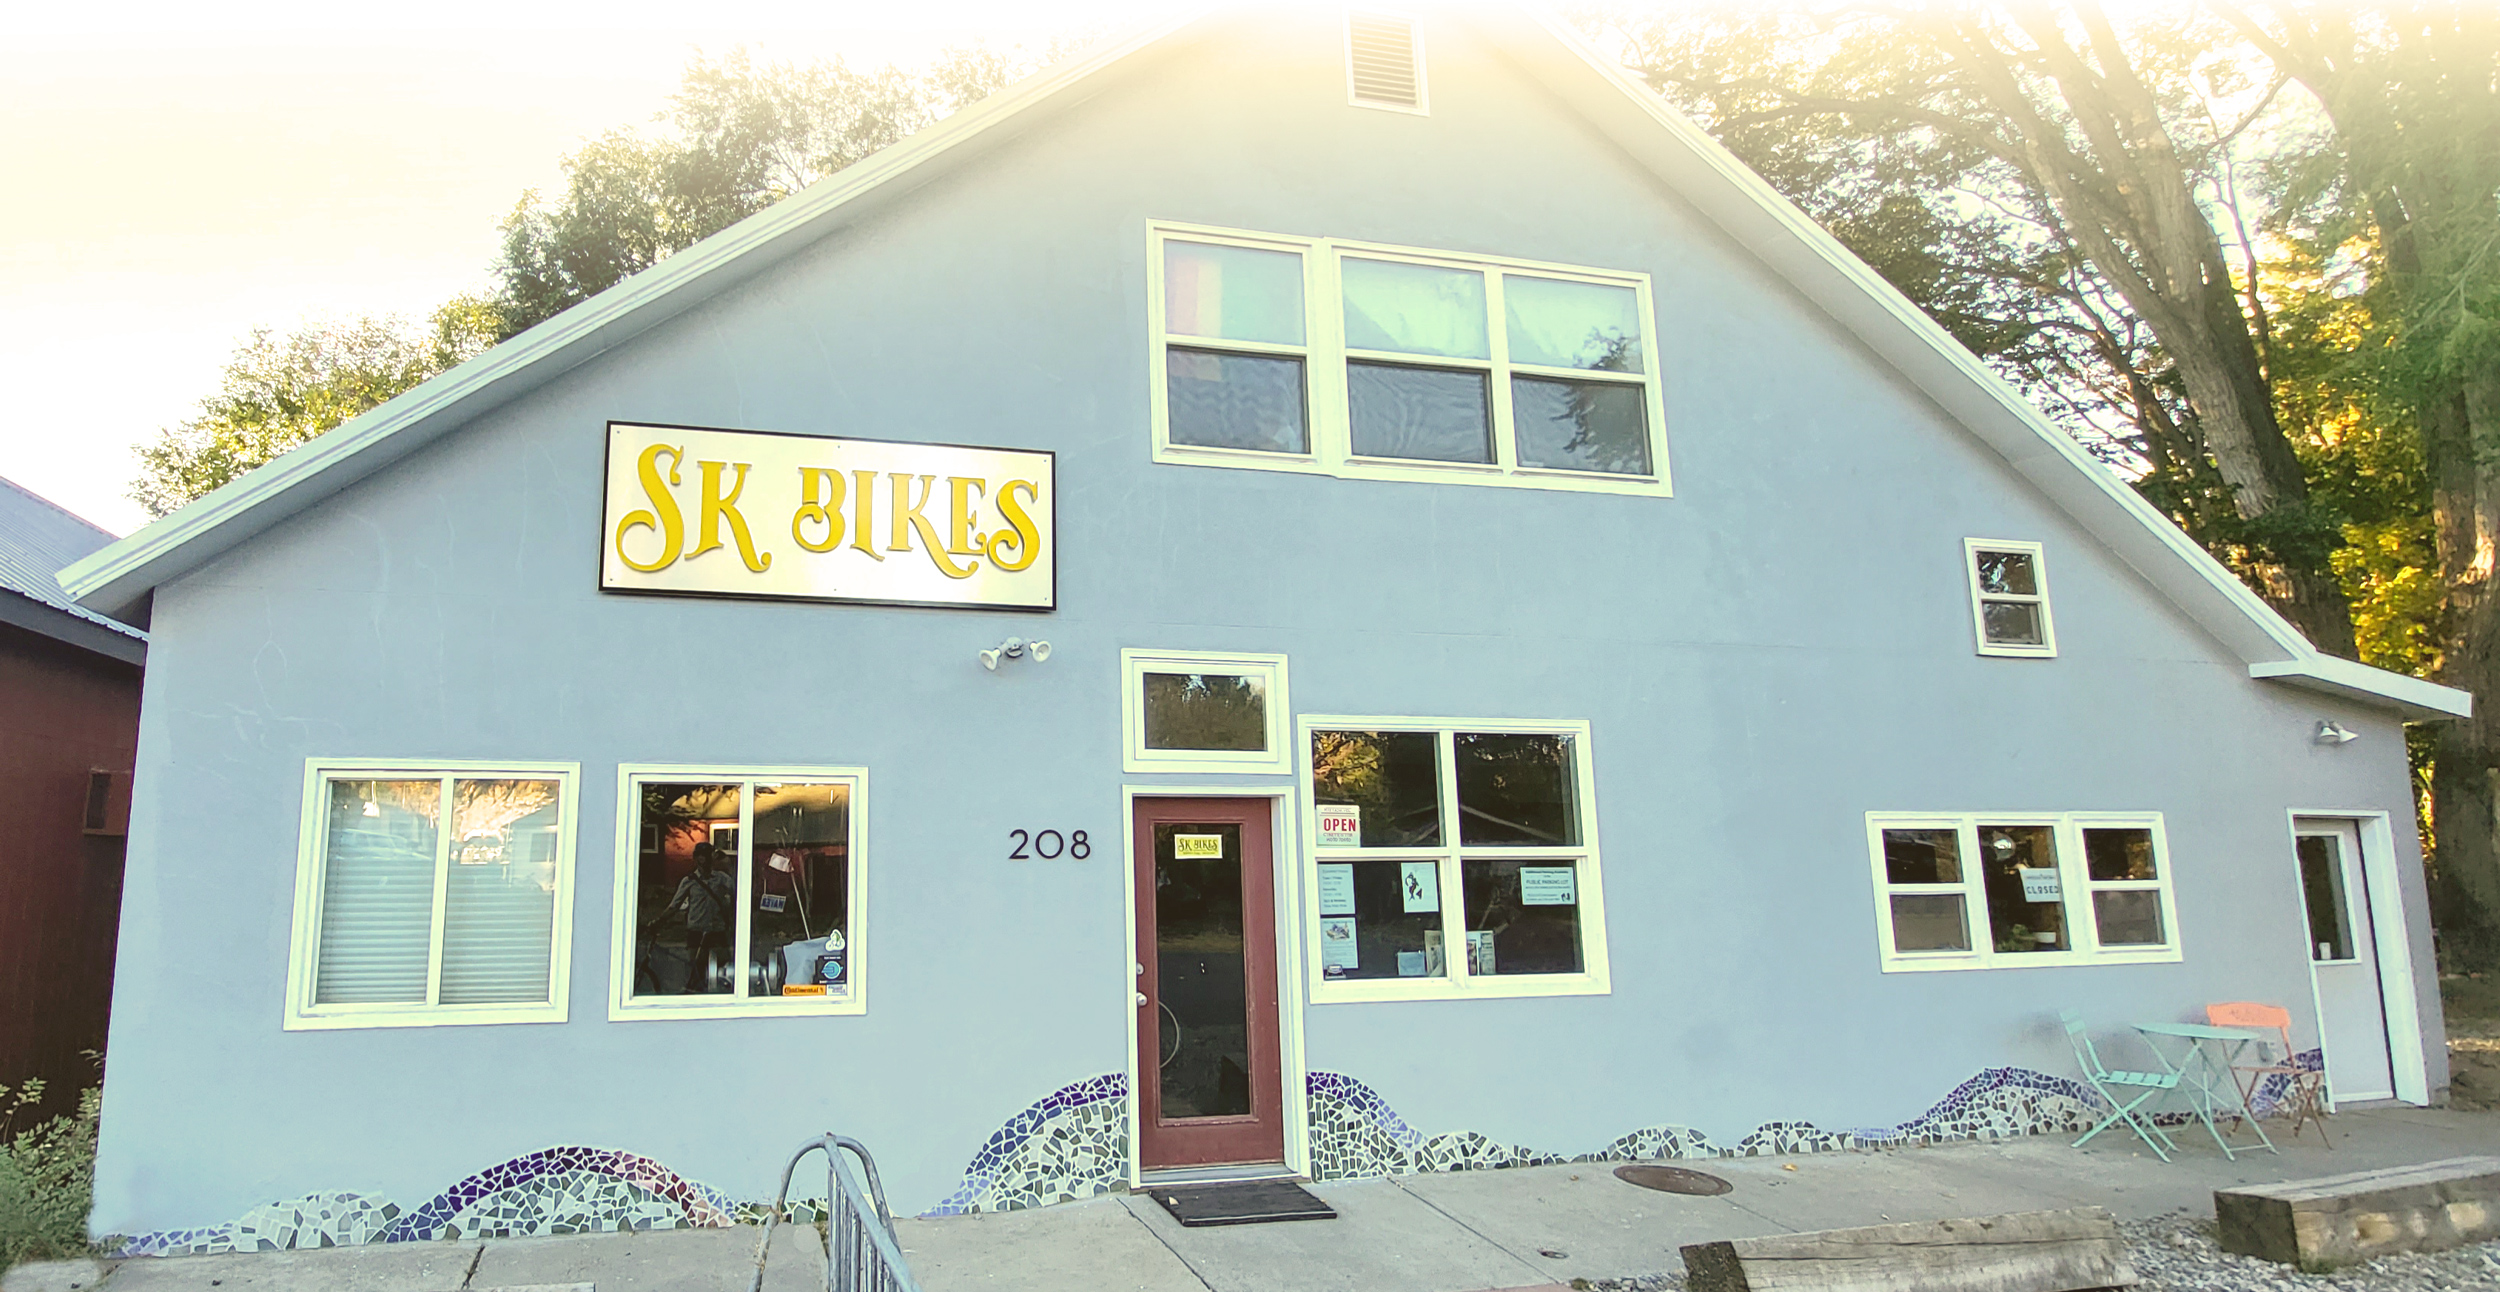 SK Bikes